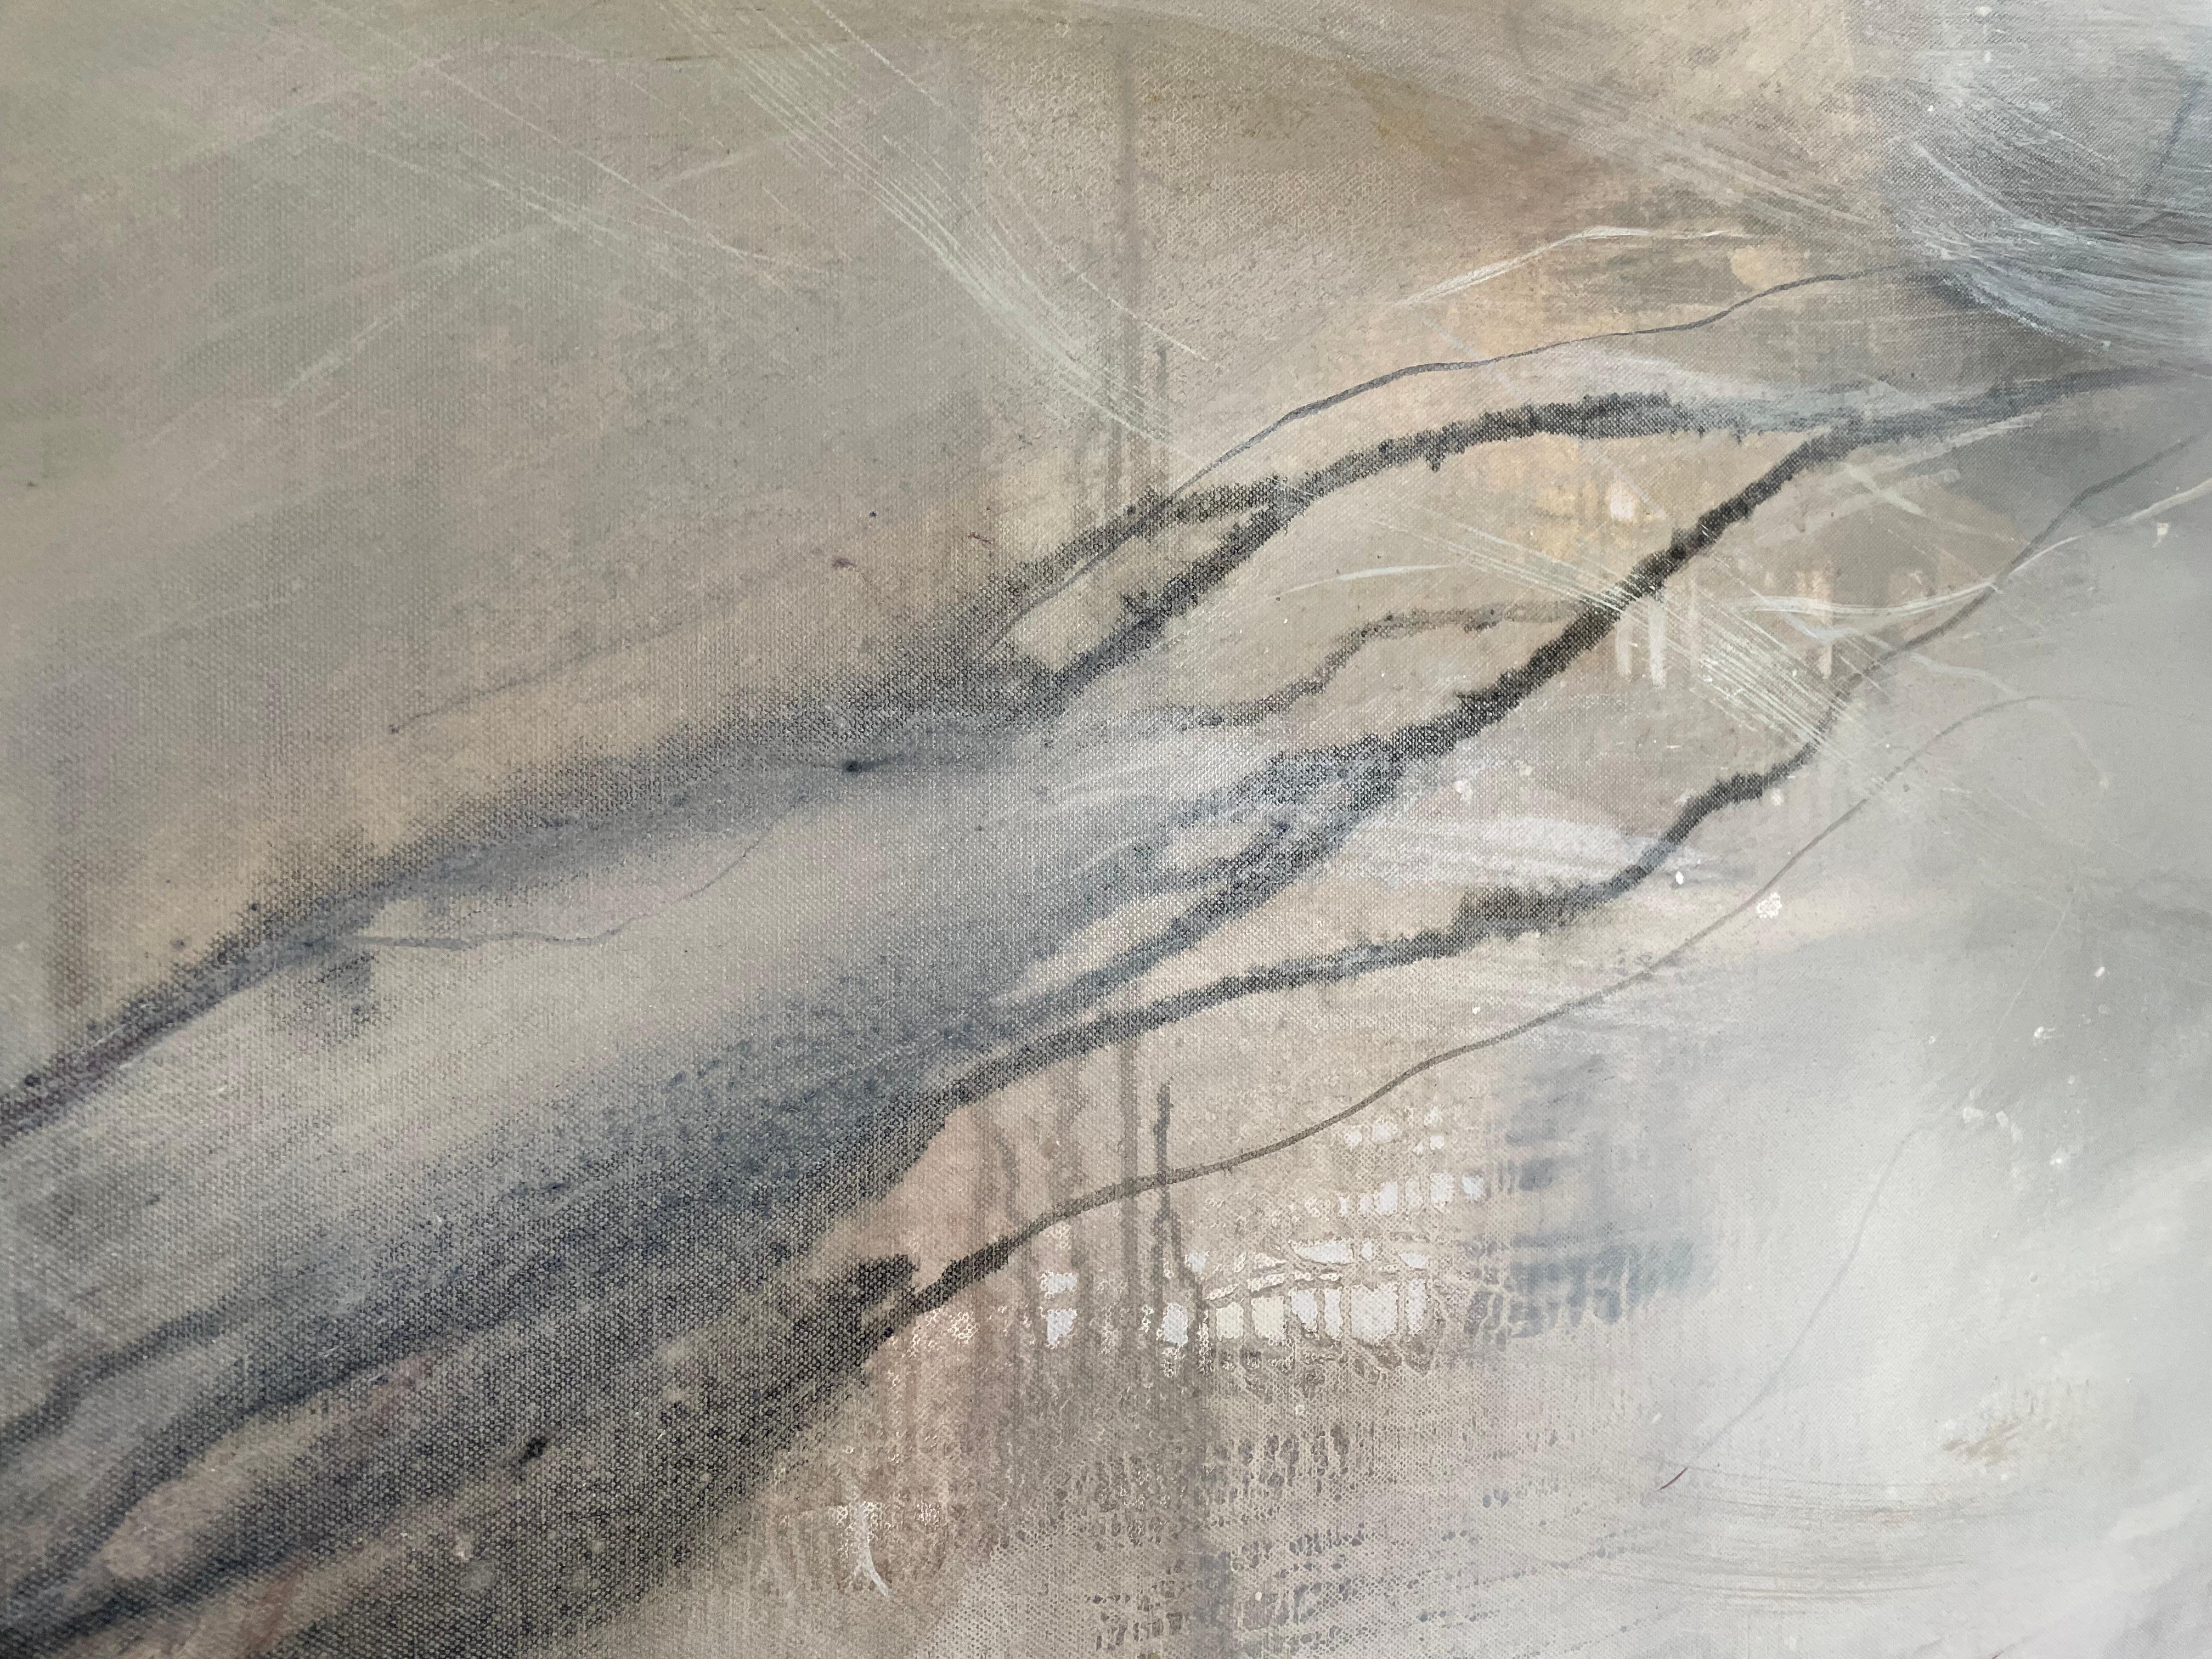 Juliette Paull hat eine neue Kollektion abstrakter Gemälde geschaffen, die das Kestle Barton diesen Juni mit einem fließenden Gefühl von Tiefe und Dynamik erfüllen wird. In ihrem neuen Werk verwendet Paull Farbe und die Tätigkeit des Malens, um ihr